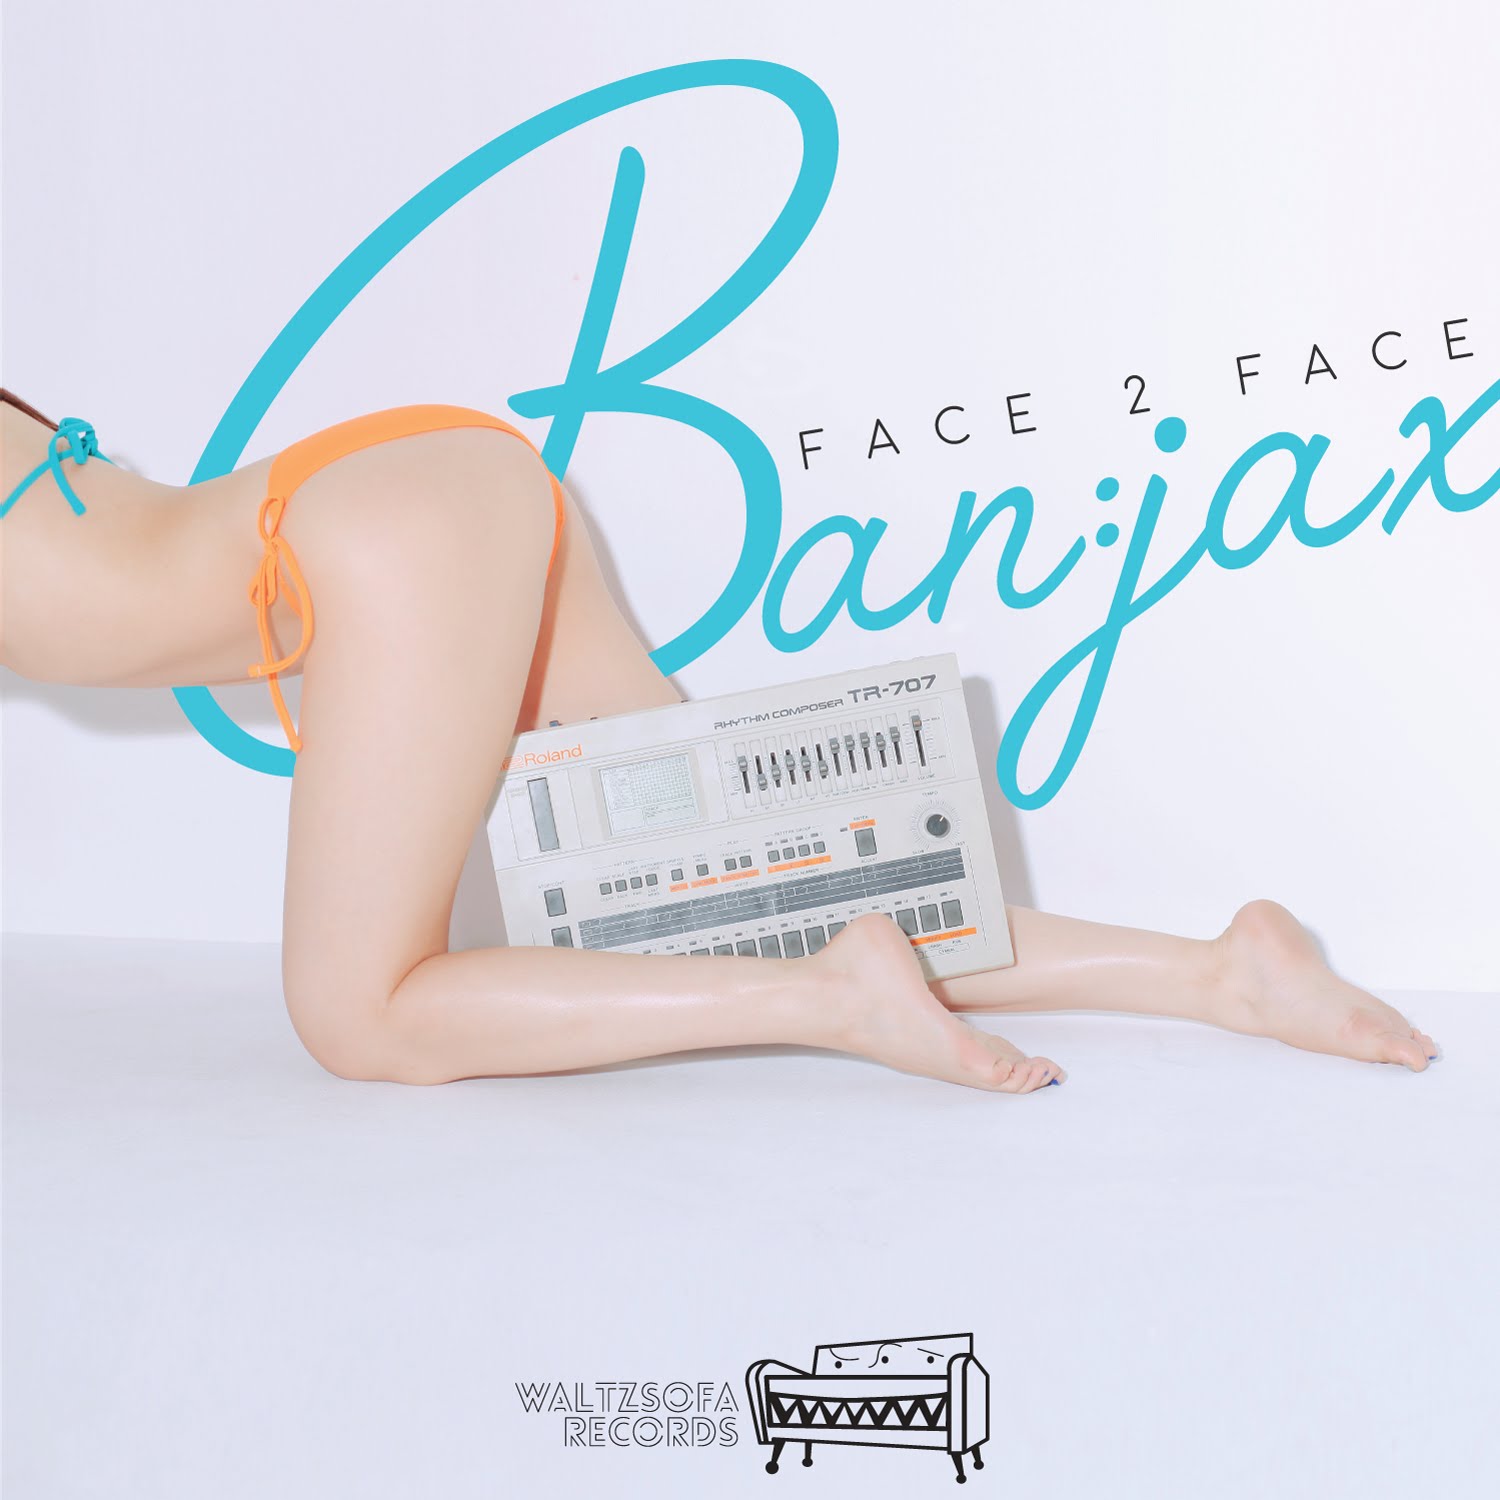 Ban:jax(밴젝스) - Face 2 Face Official Audio - YouTube